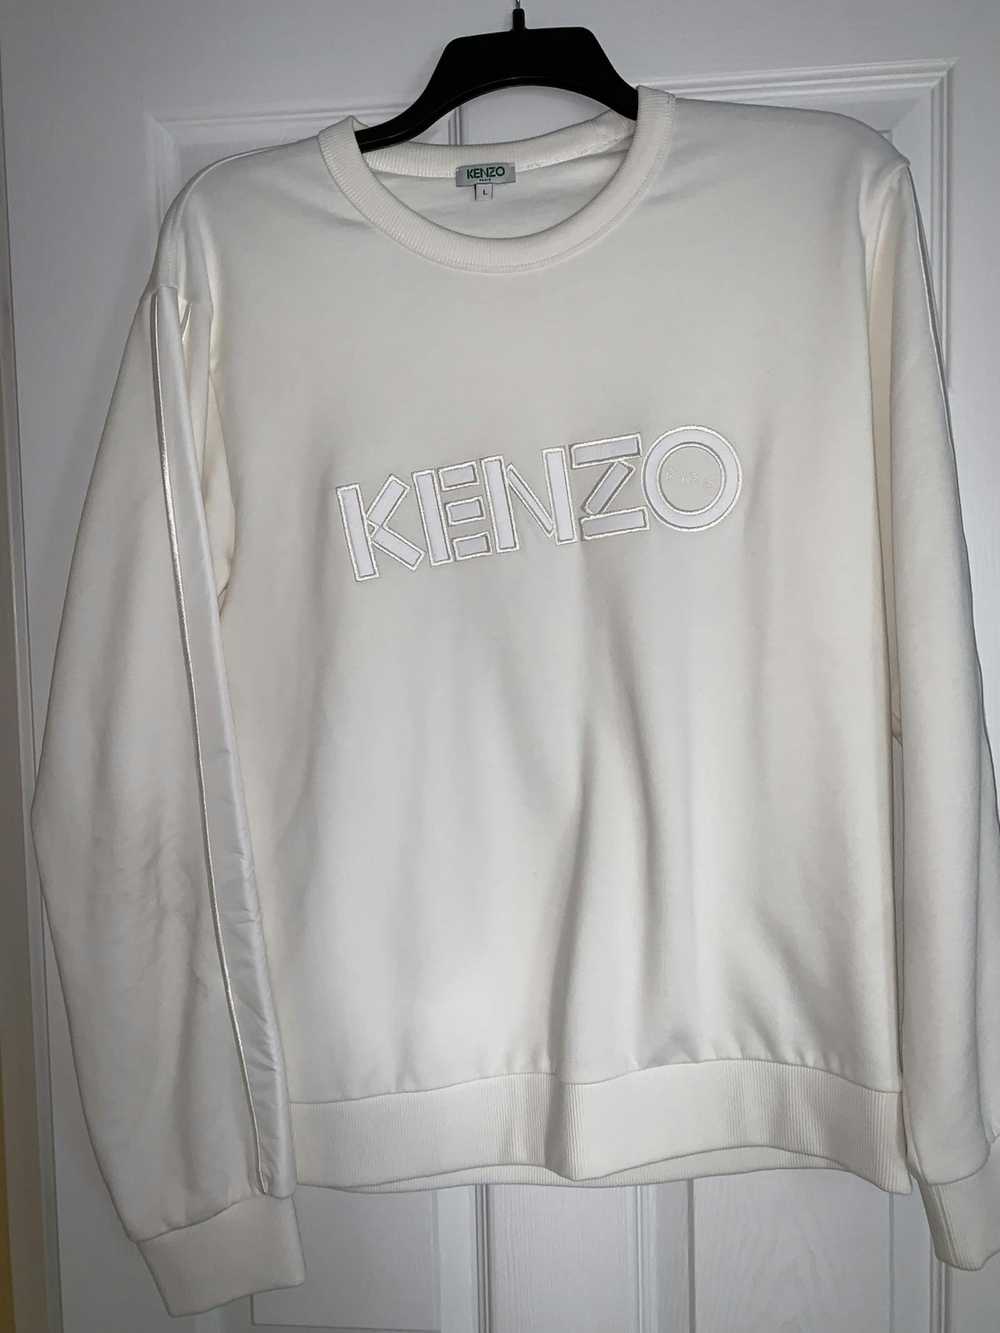 Kenzo Kenzo Sweatshirt (supreme, palace, adidas, … - image 1